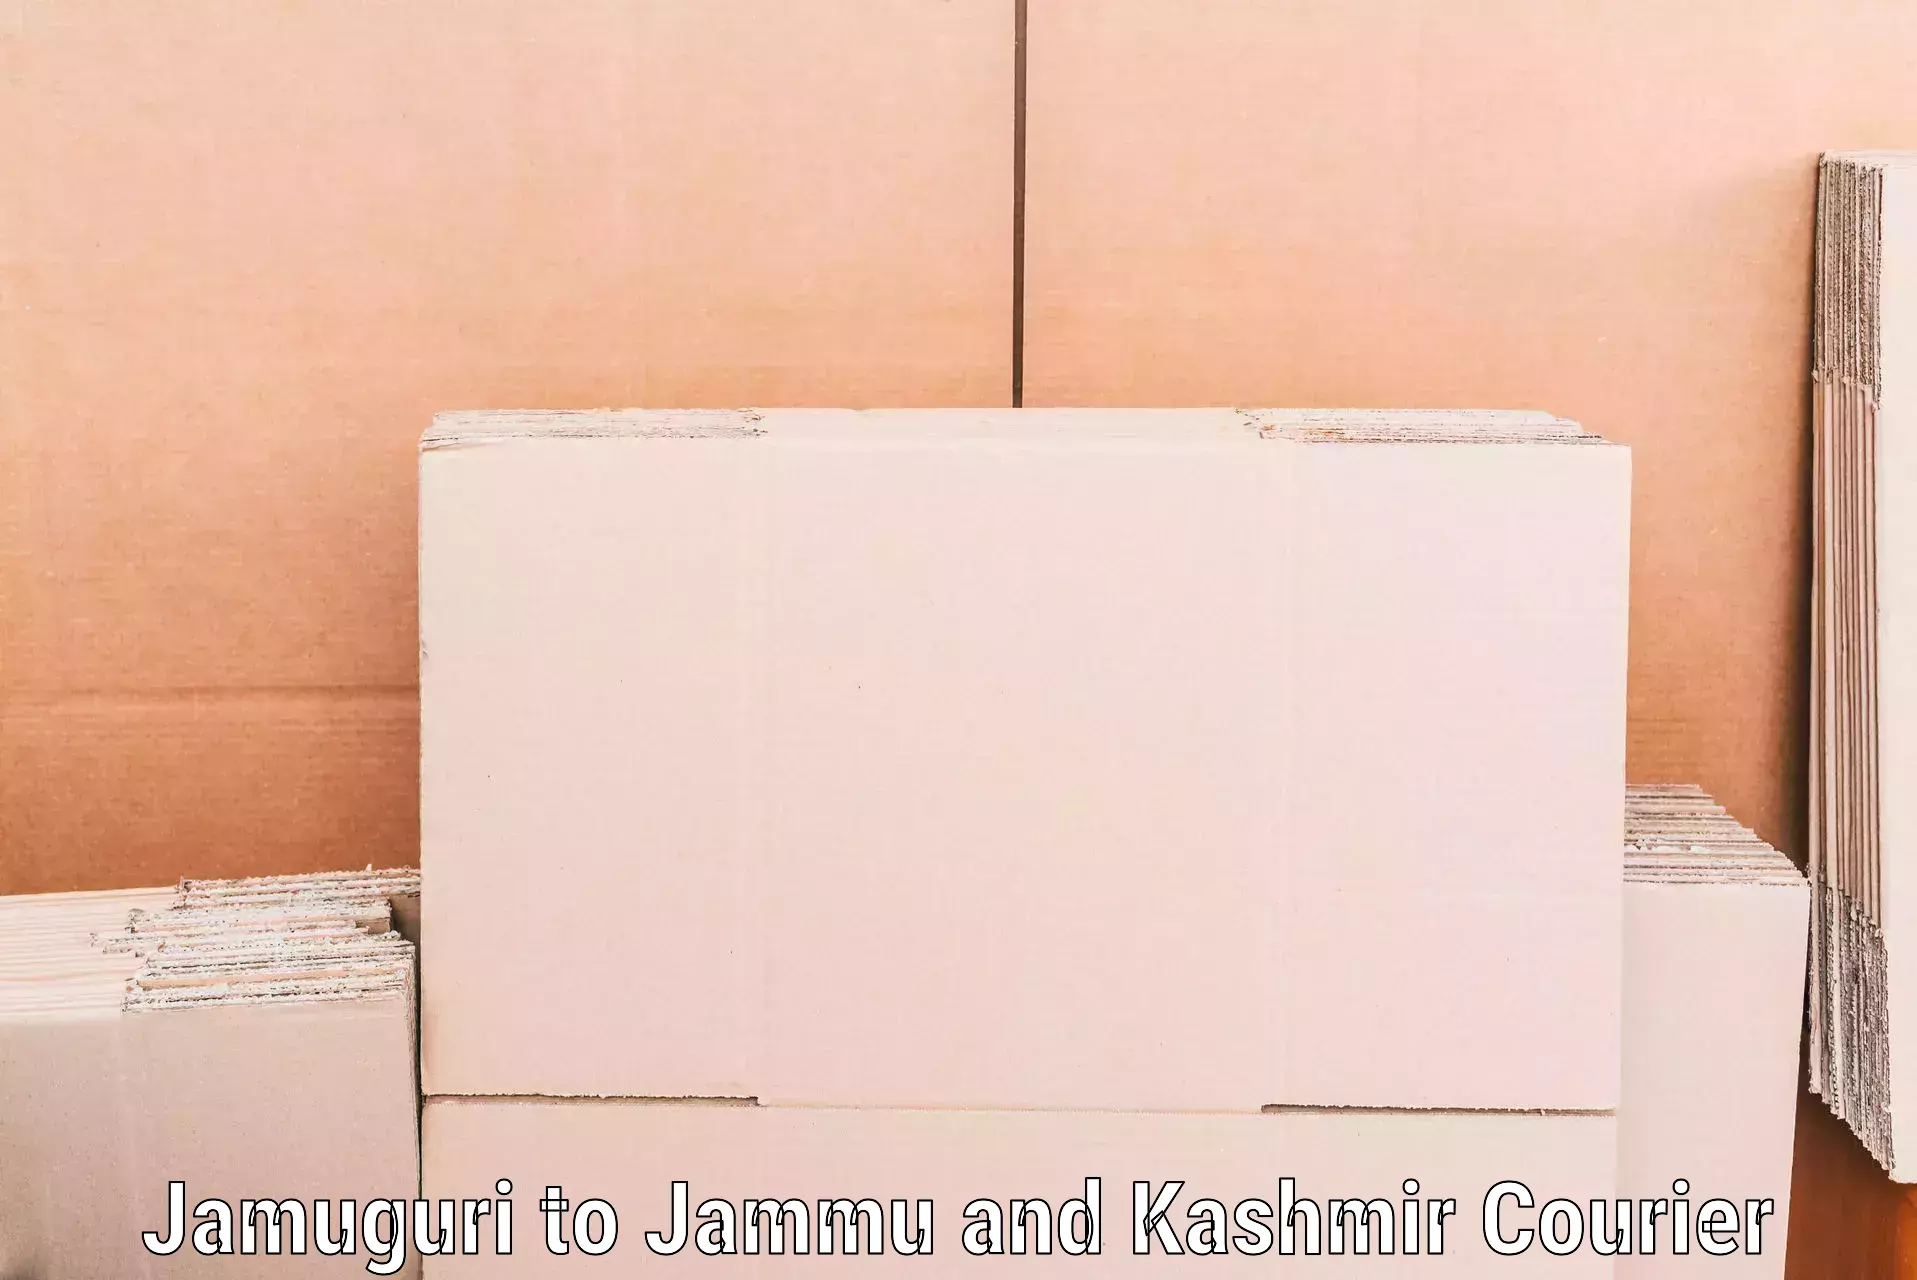 Furniture moving plans in Jamuguri to Srinagar Kashmir